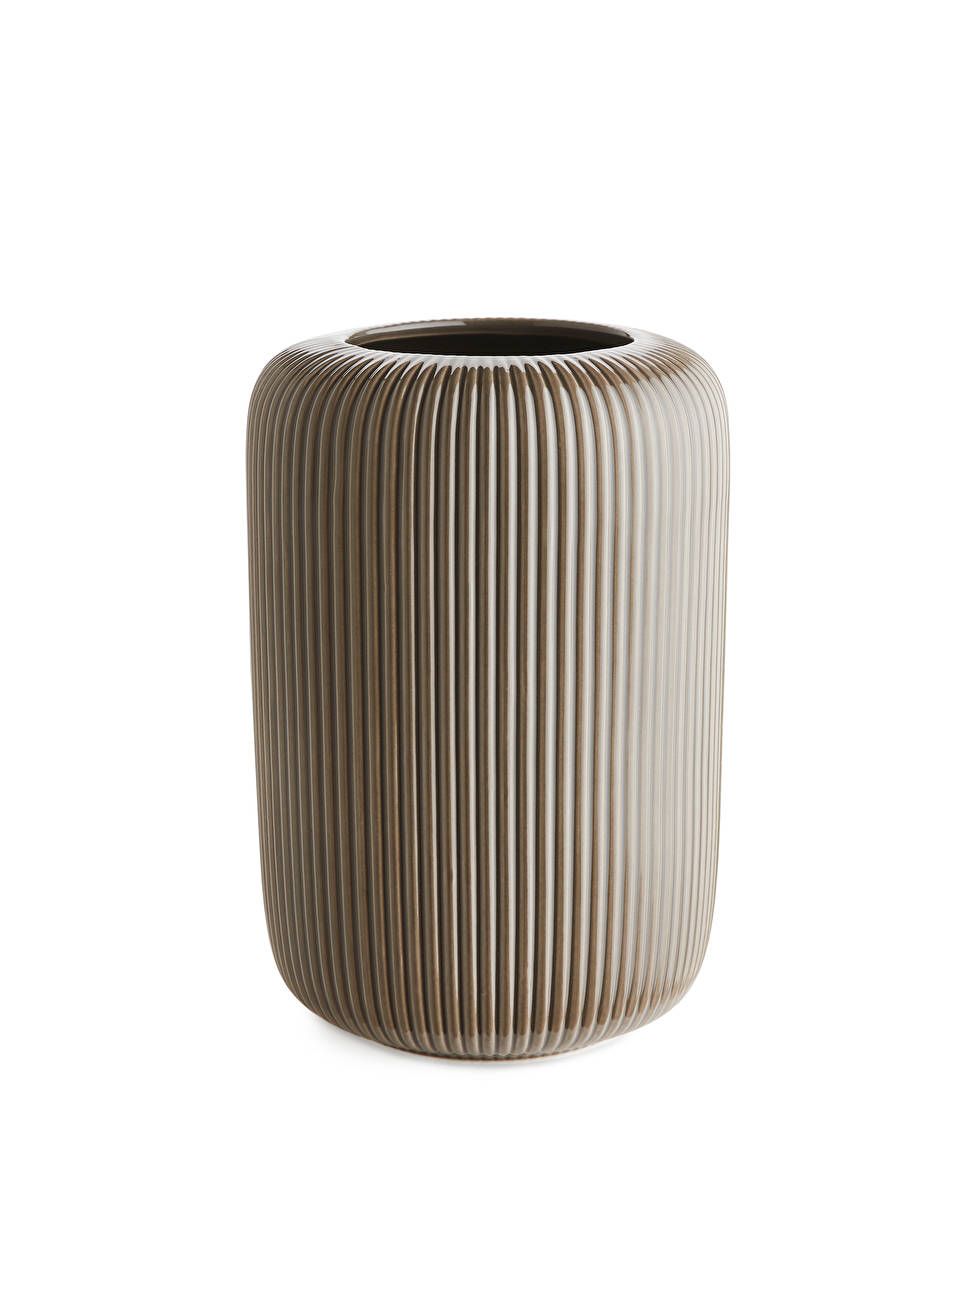 Ridge Terracotta Vase 22 cm - Taupe - ARKET GB | ARKET